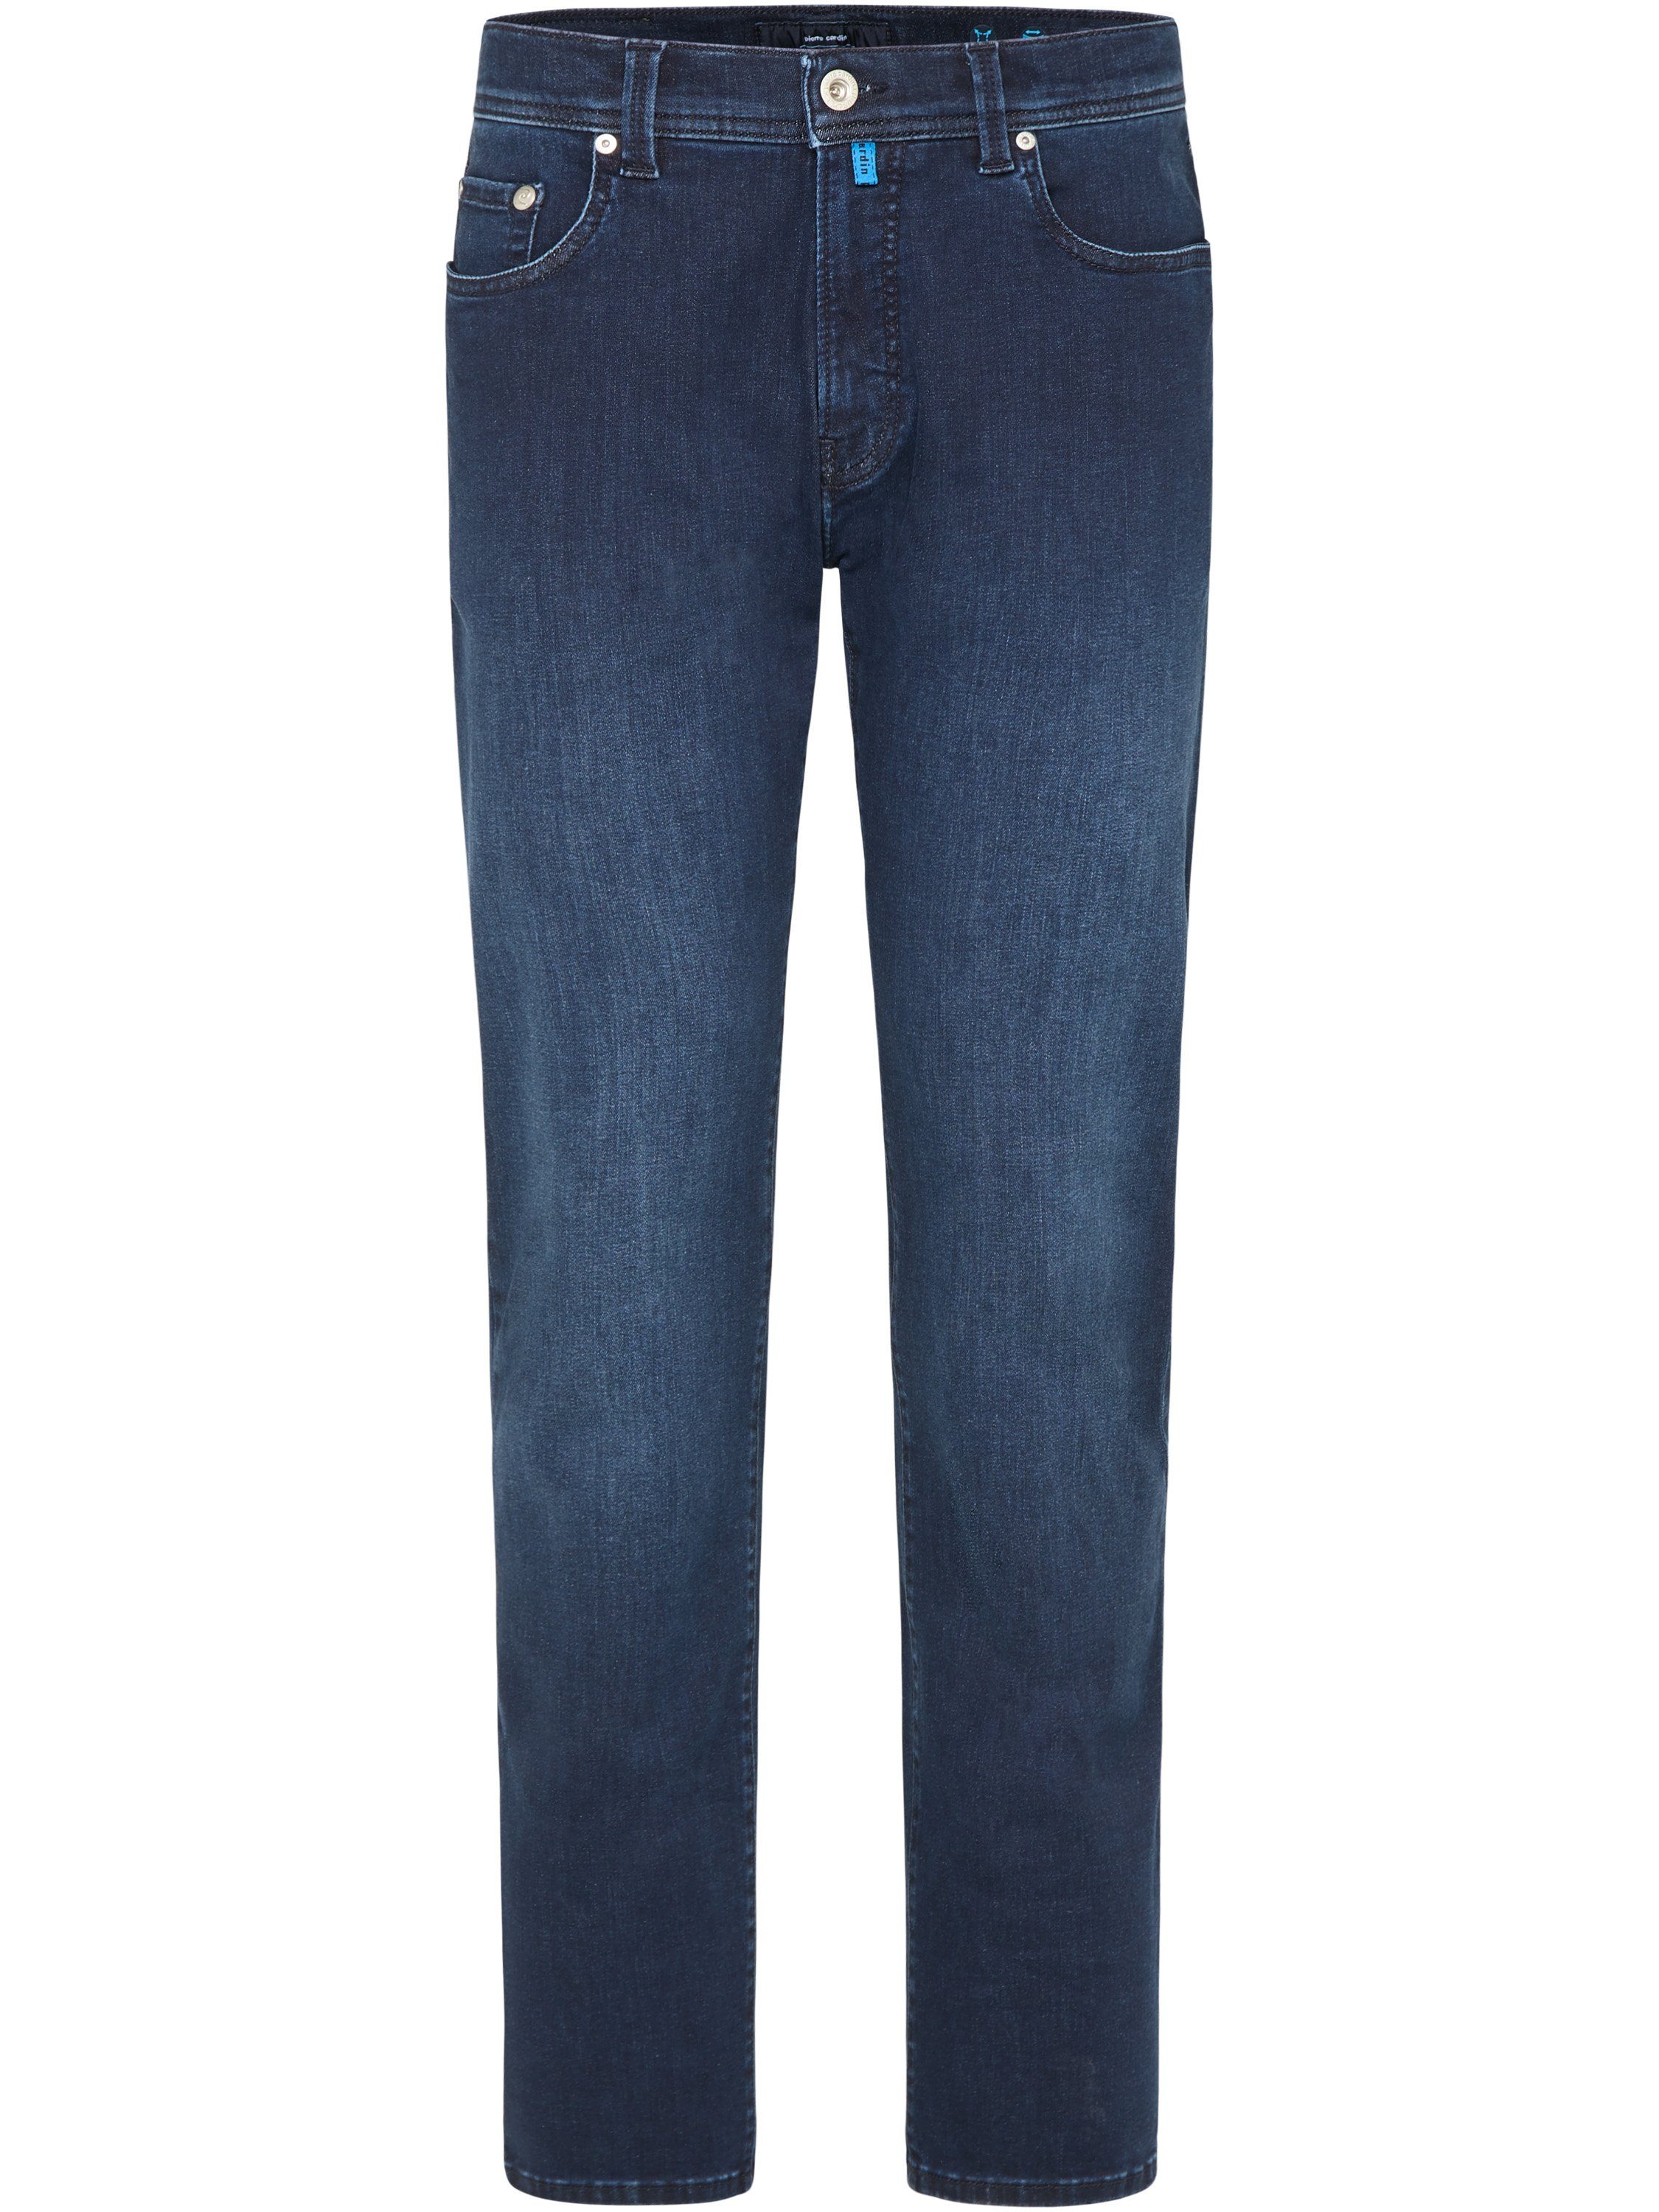 FUTUREFLEX 3451 5-Pocket-Jeans rinsed LYON Pierre 8820.03 CARDIN PIERRE blue midnight Cardin